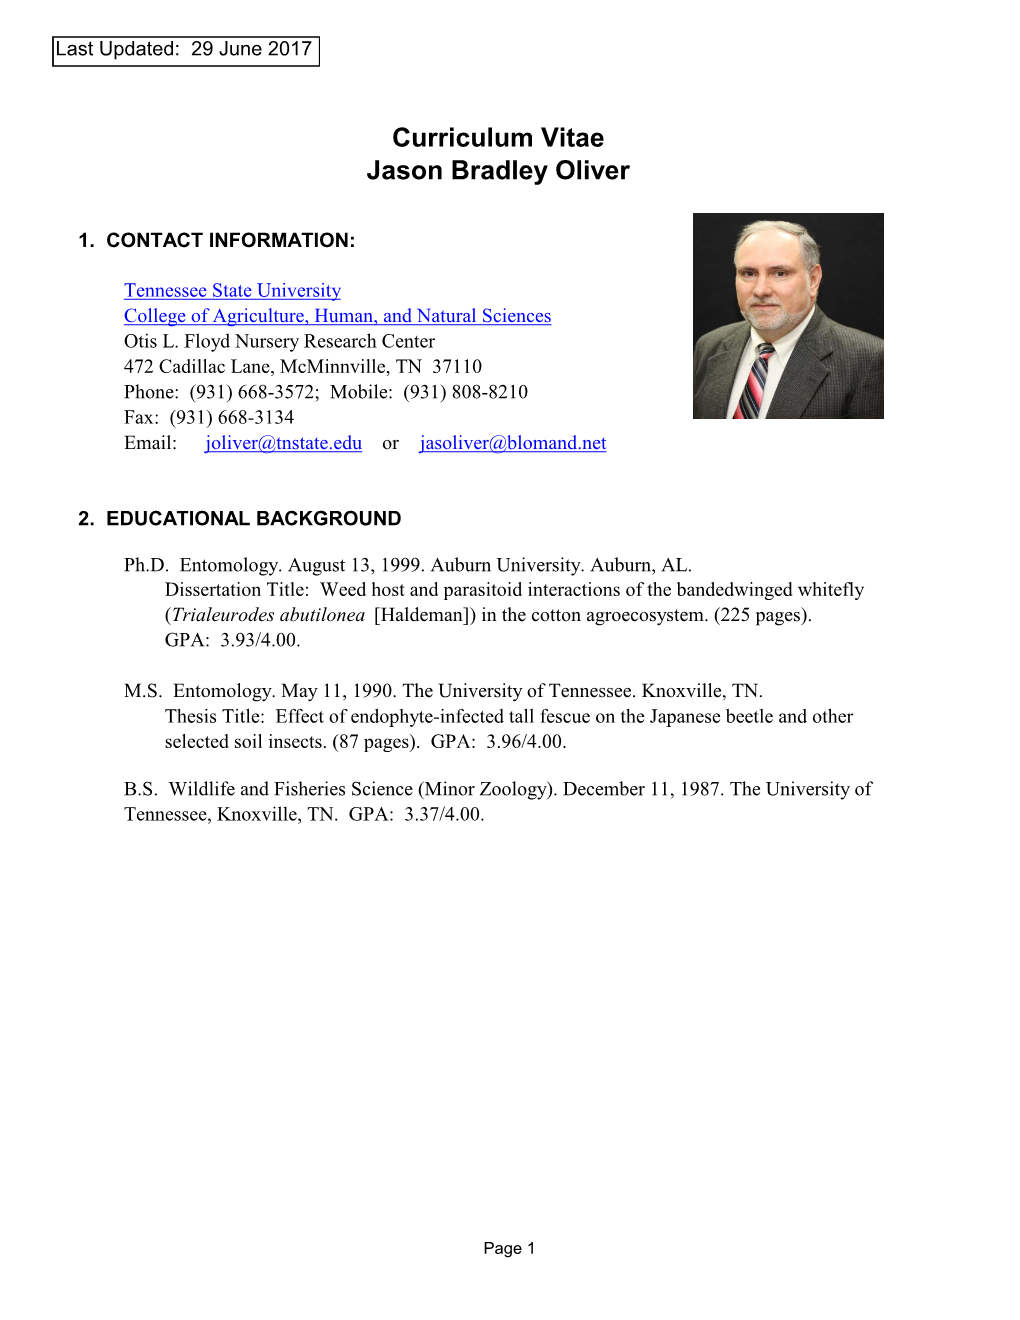 Curriculum Vitae Jason Bradley Oliver